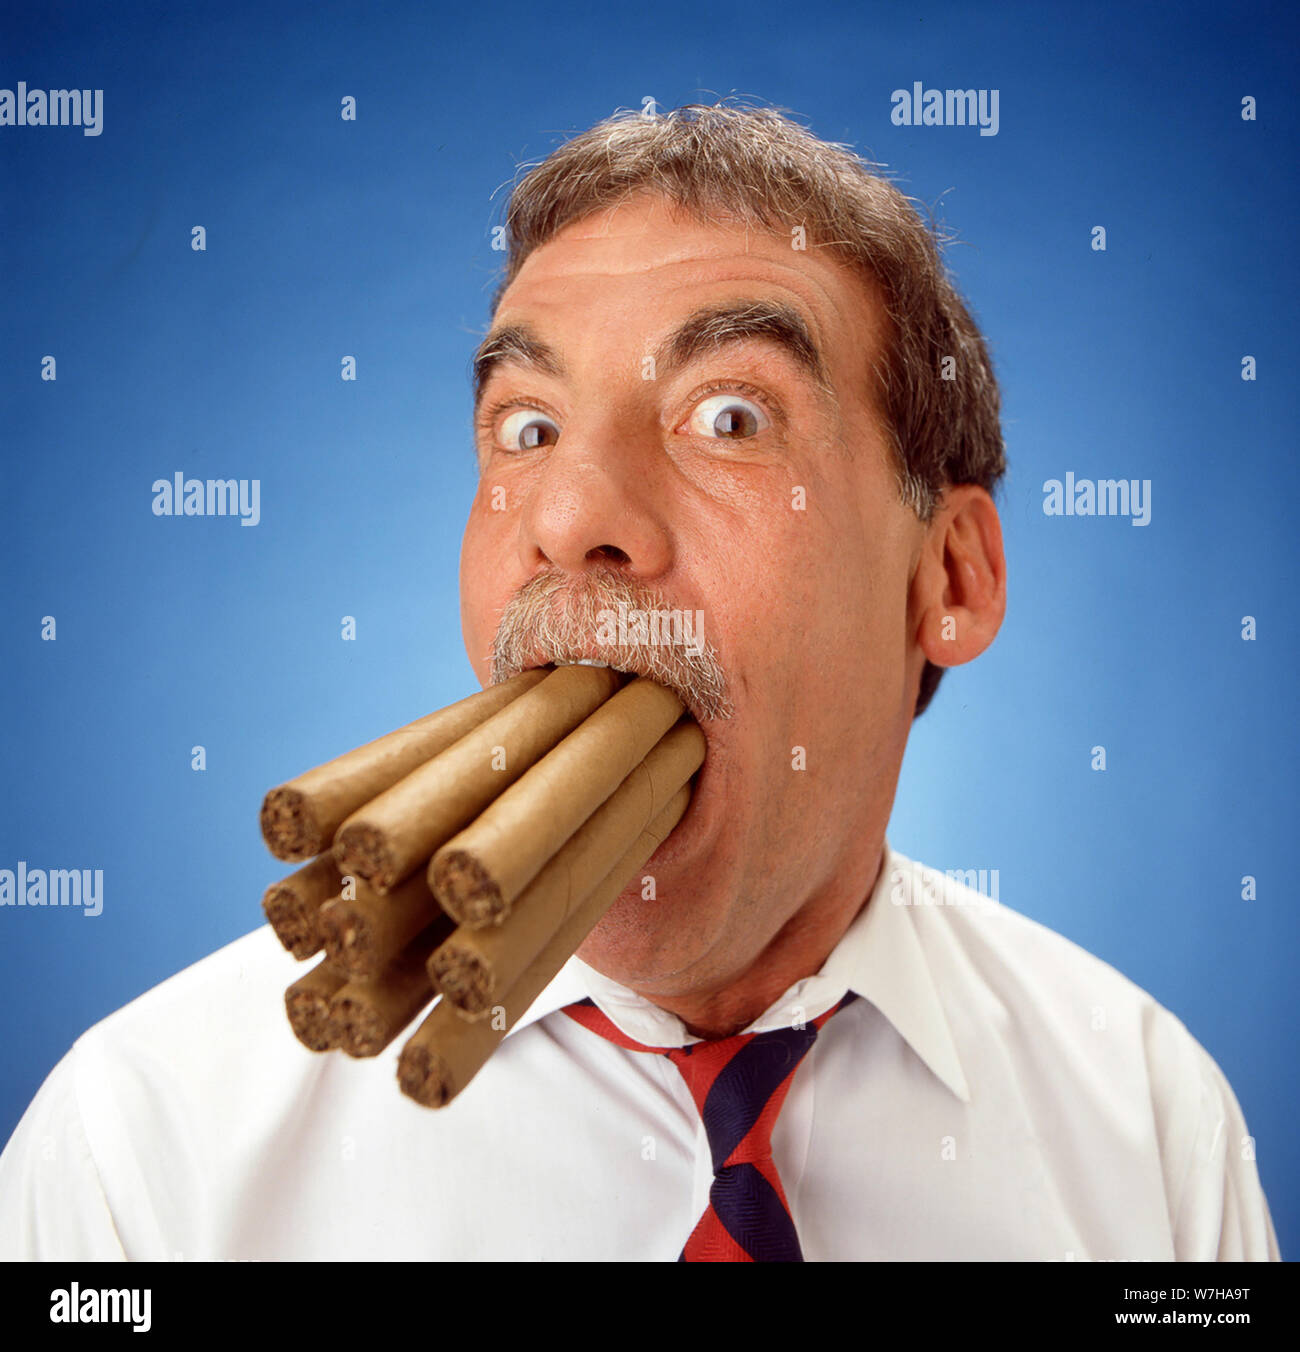 Uomo con sigari in bocca Foto Stock